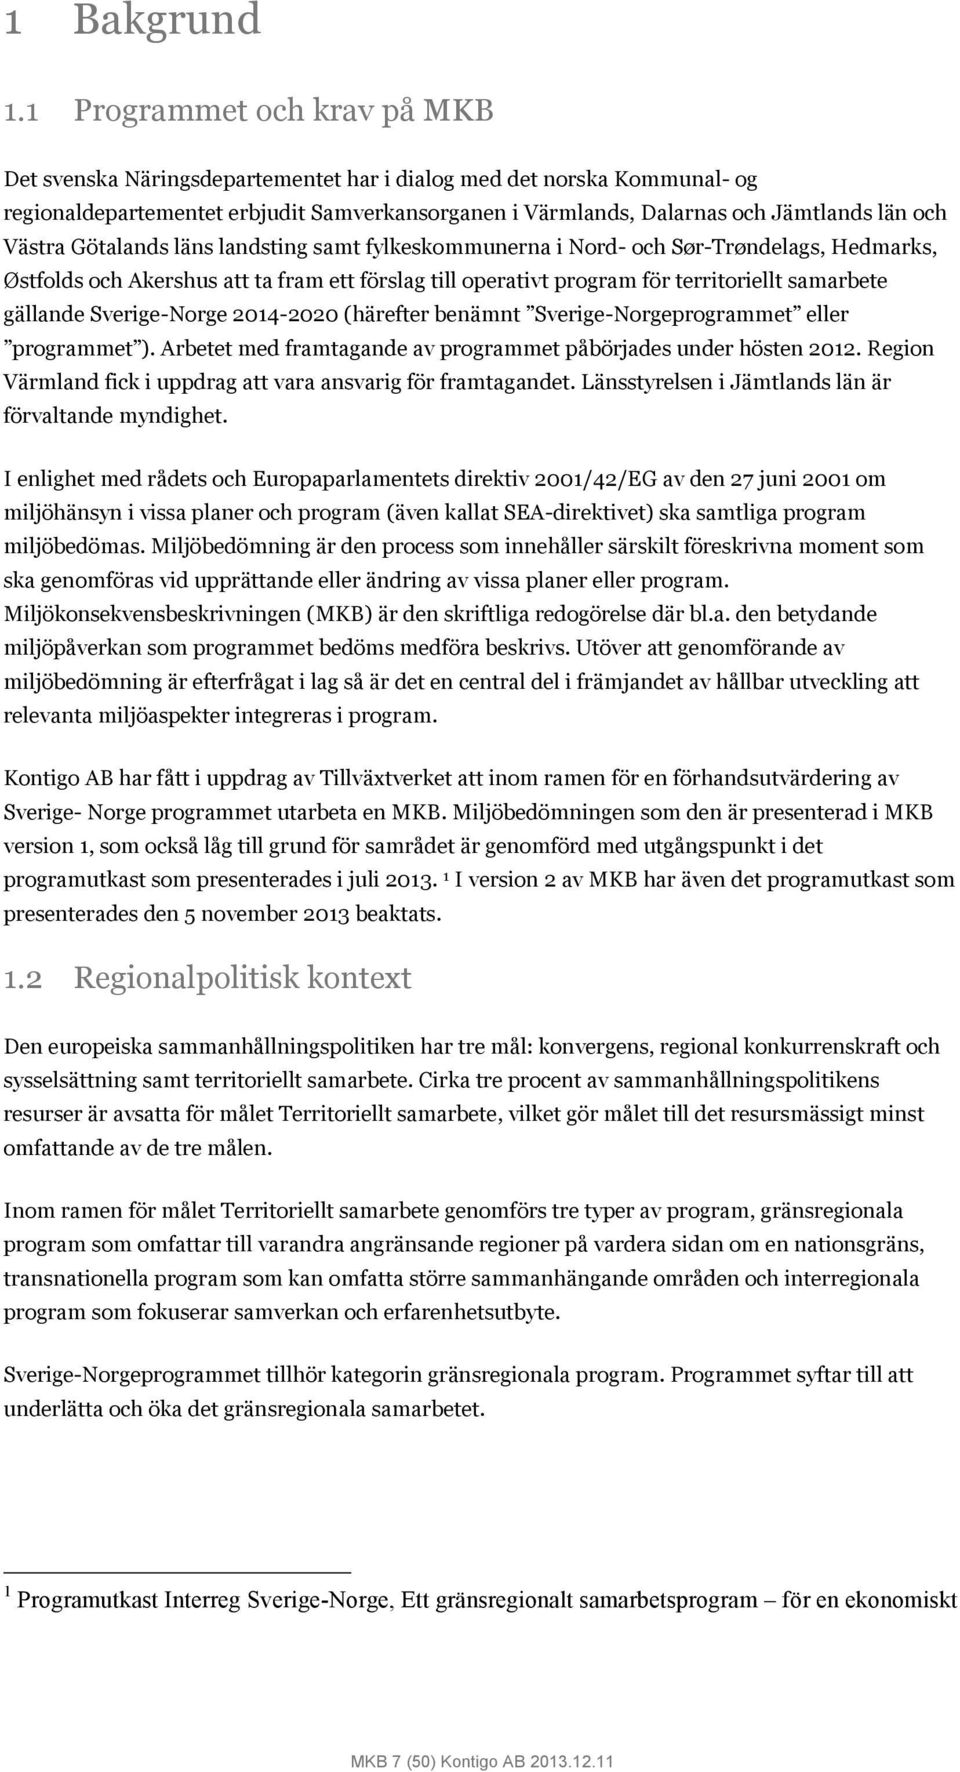 Västra Götalands läns landsting samt fylkeskommunerna i Nord- och Sør-Trøndelags, Hedmarks, Østfolds och Akershus att ta fram ett förslag till operativt program för territoriellt samarbete gällande